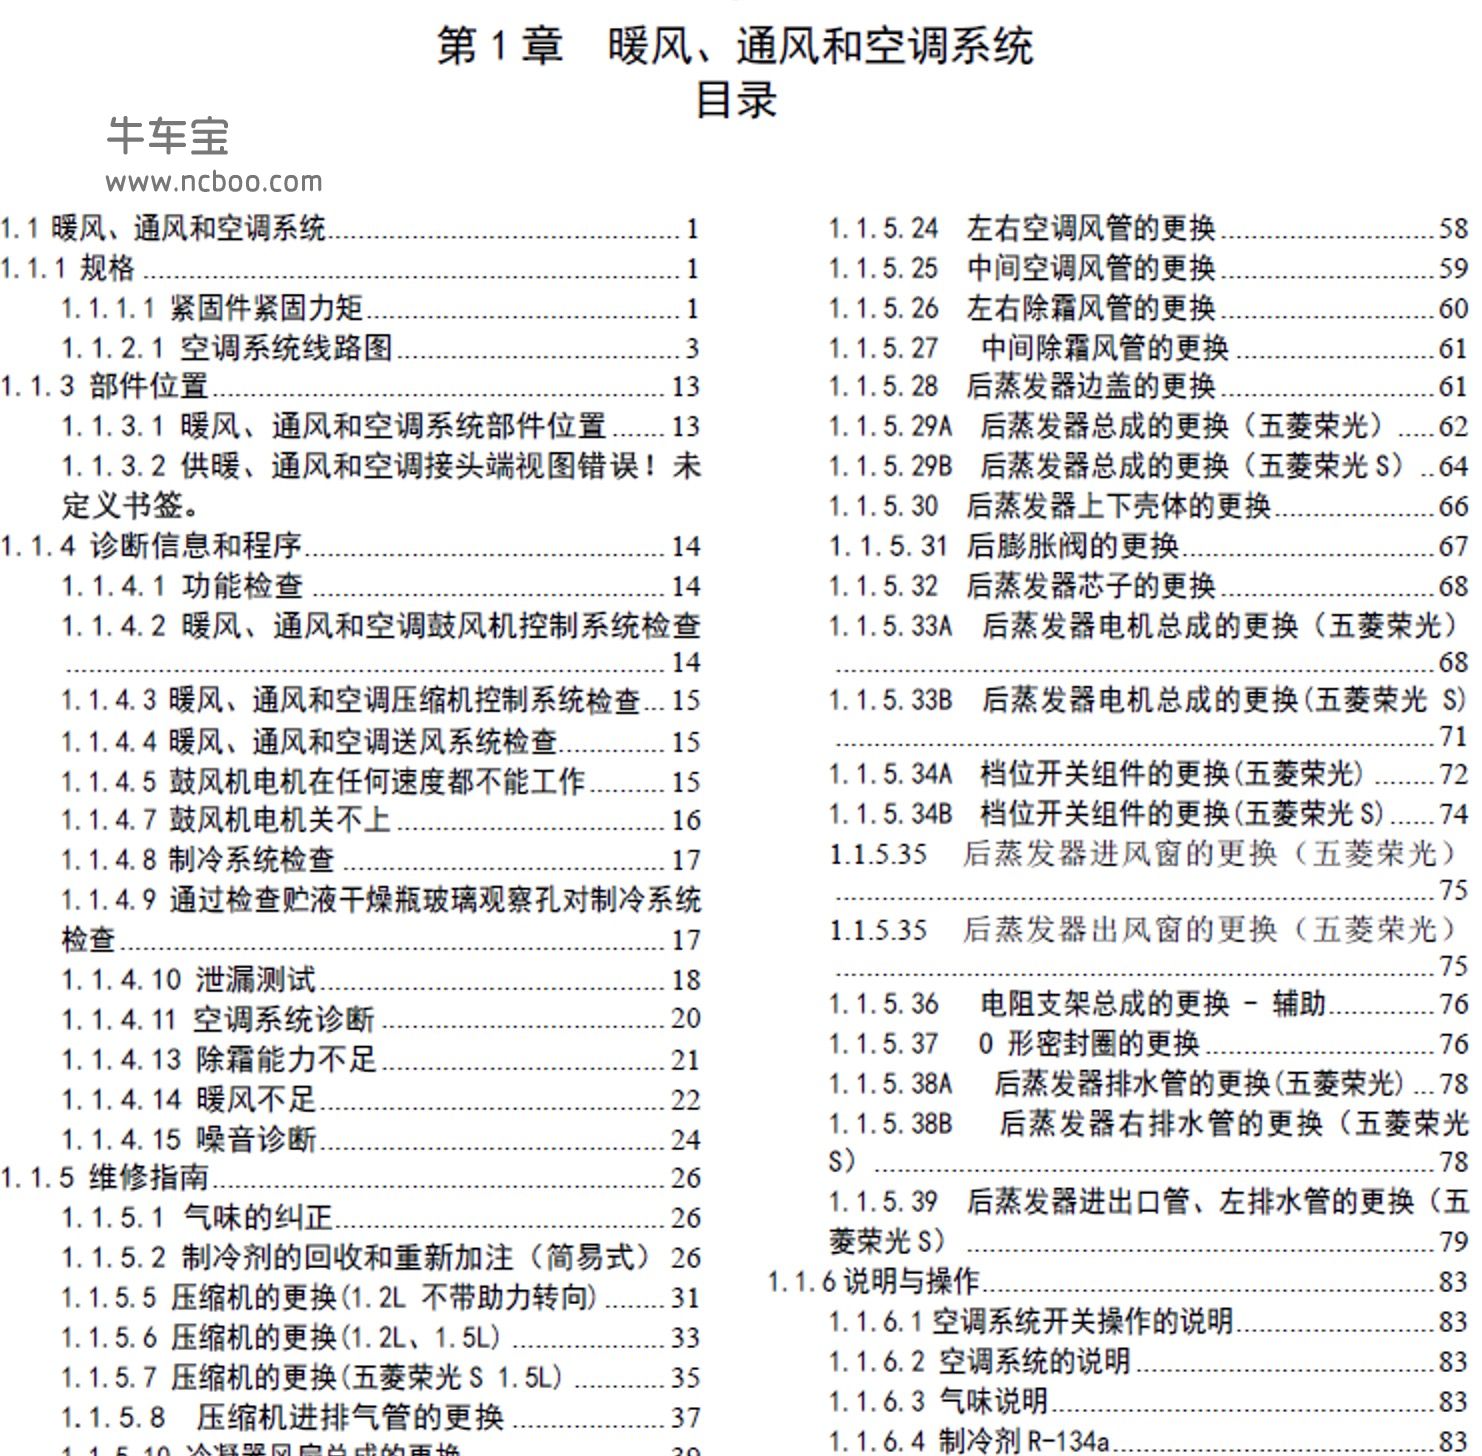 2013-2014款五菱荣光S(N310)原厂维修手册和电路图下载